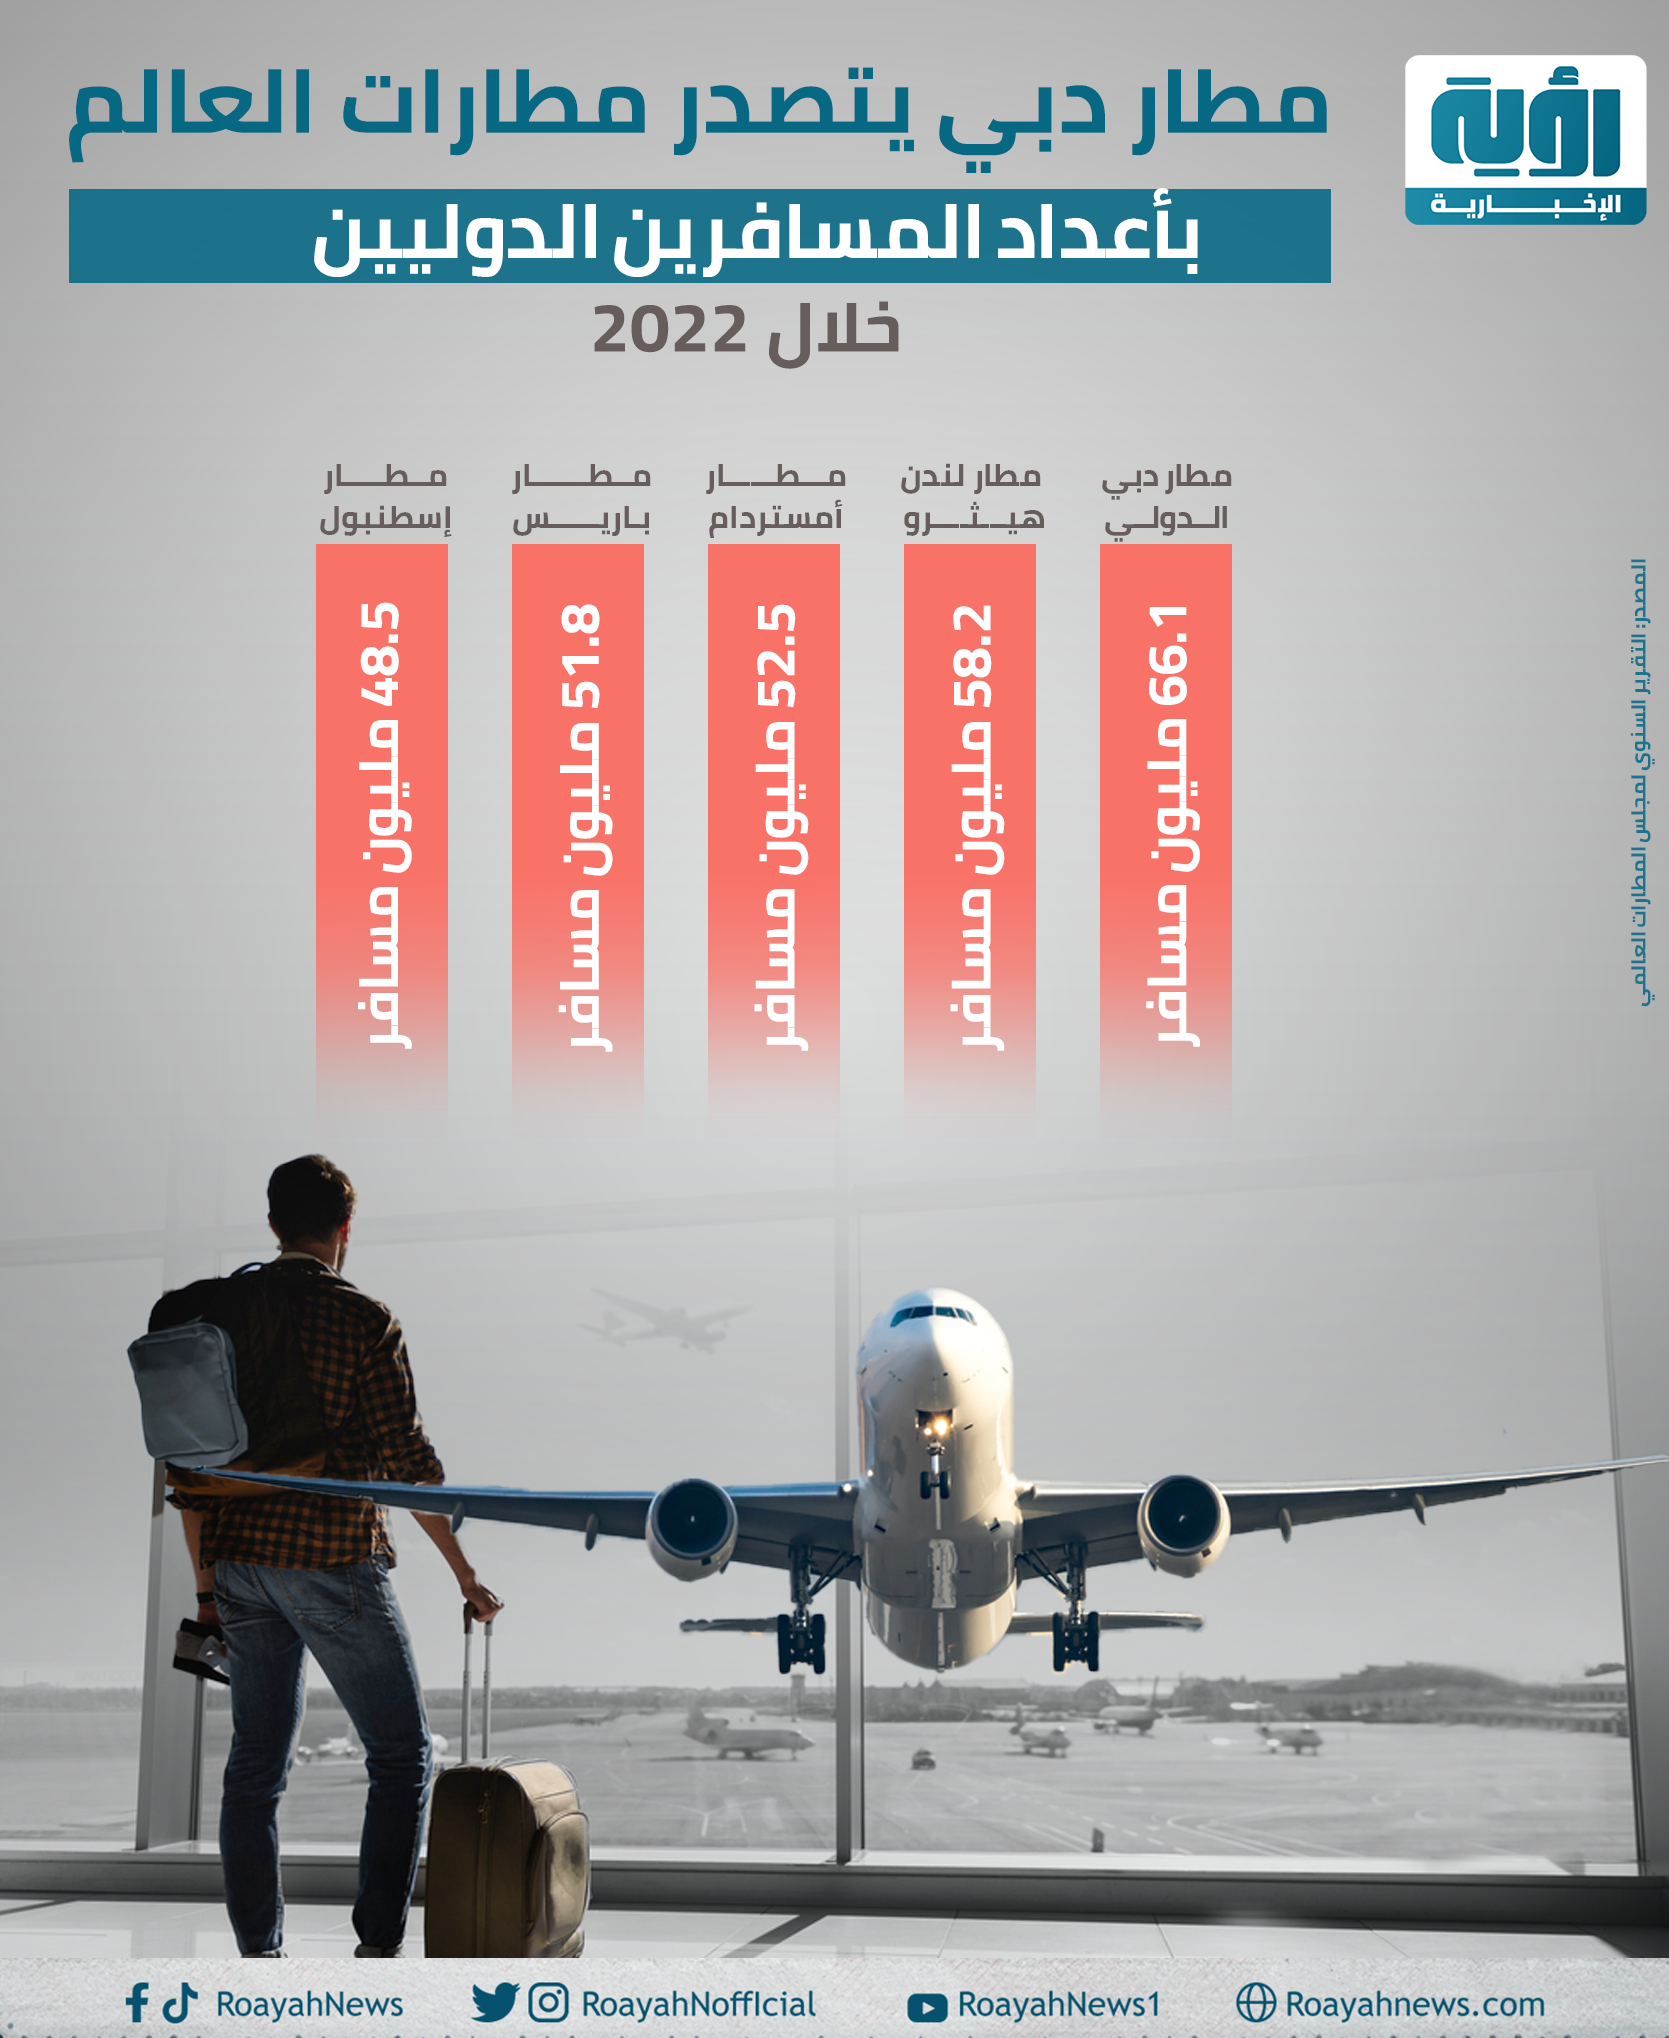 مطار دبي يتصدر مطارات العالم في عدد المسافرين